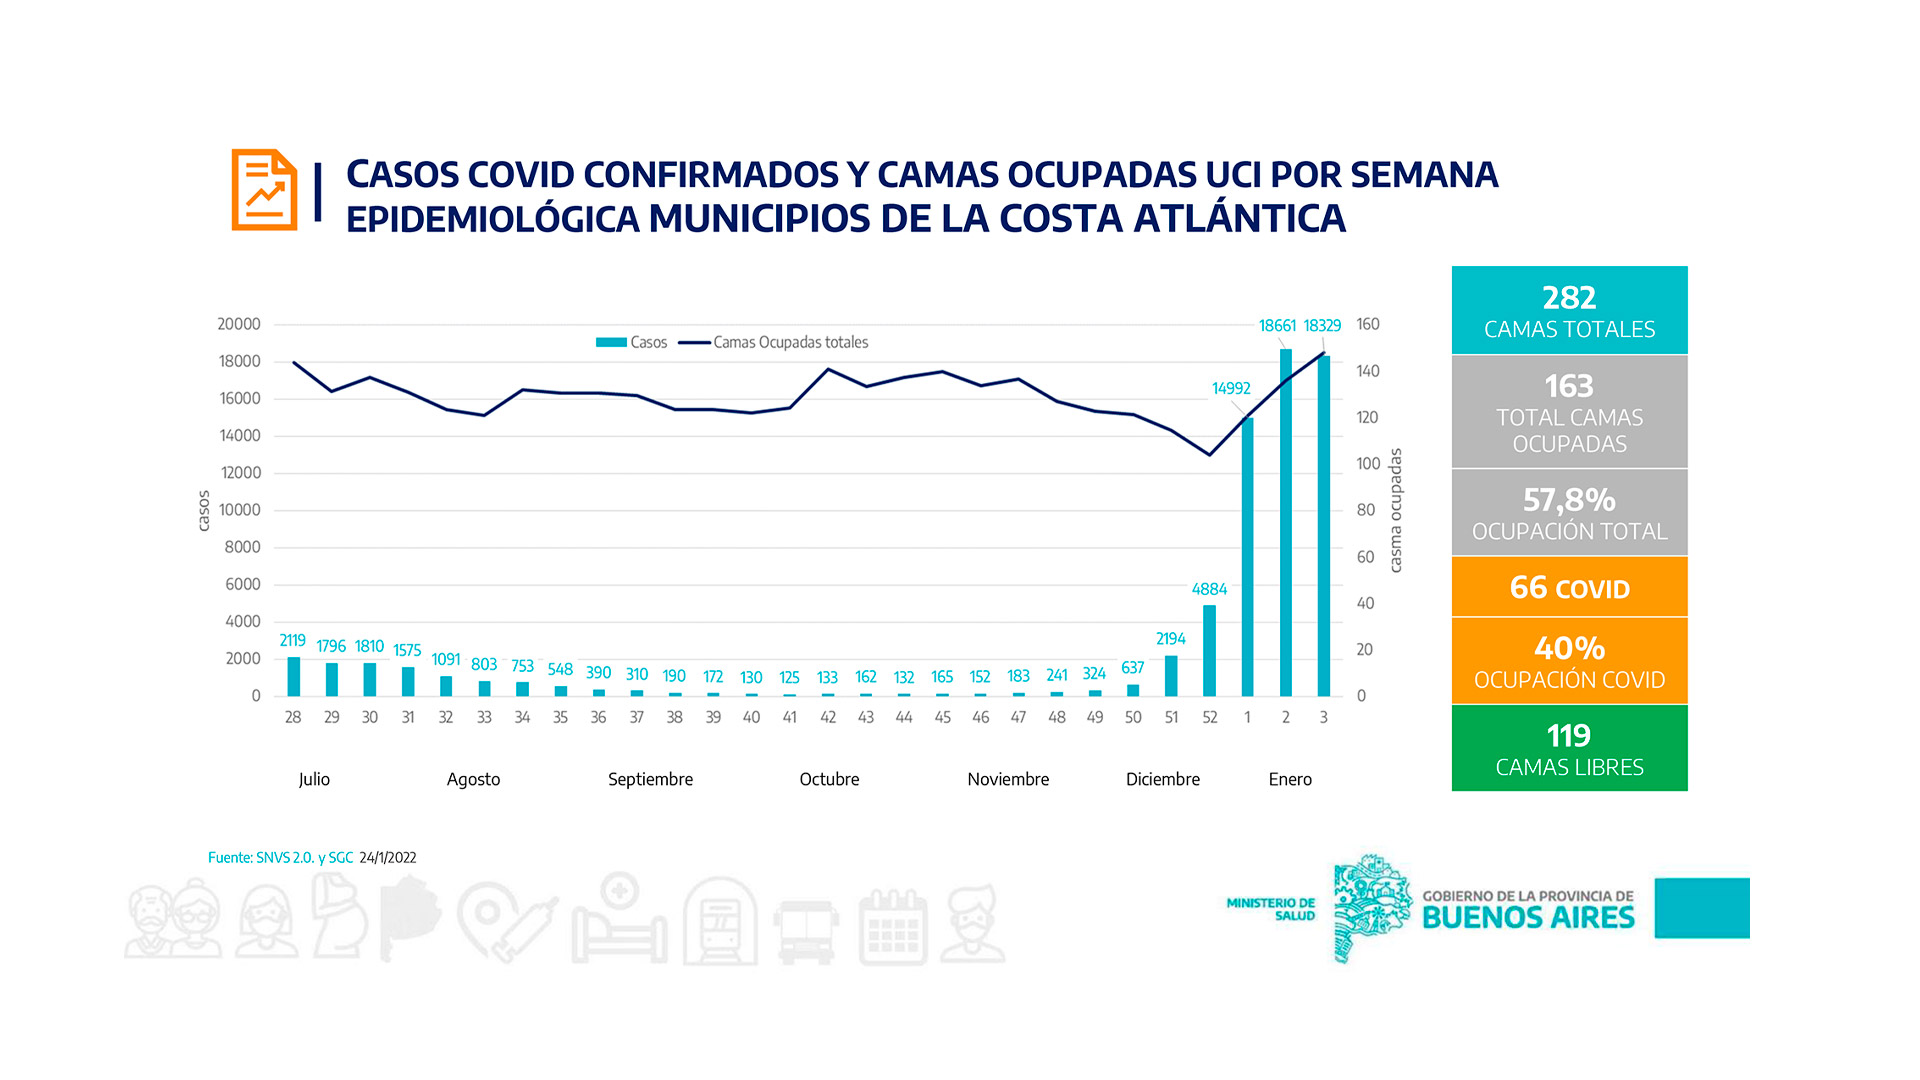 La ocupación de las camas de terapia intensiva en los municipios de la Costa Atlántica es mayor que en toda la provincia de Buenos Aires